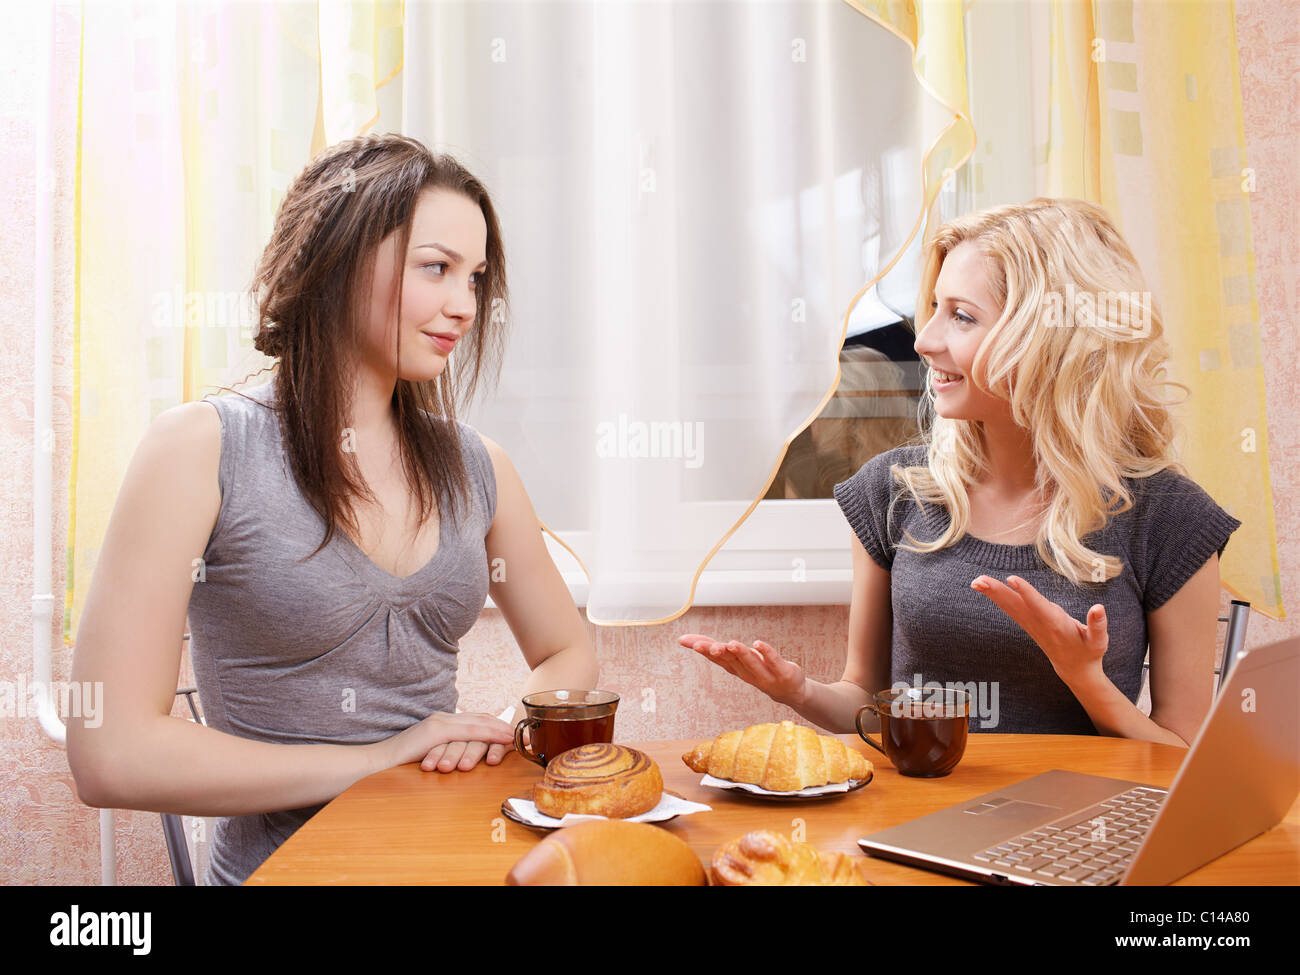 Сидим дома пьем чай. Две девушки за столом. Подруги за столом. Чаепитие с подругами. Две женщины сидят за столом.